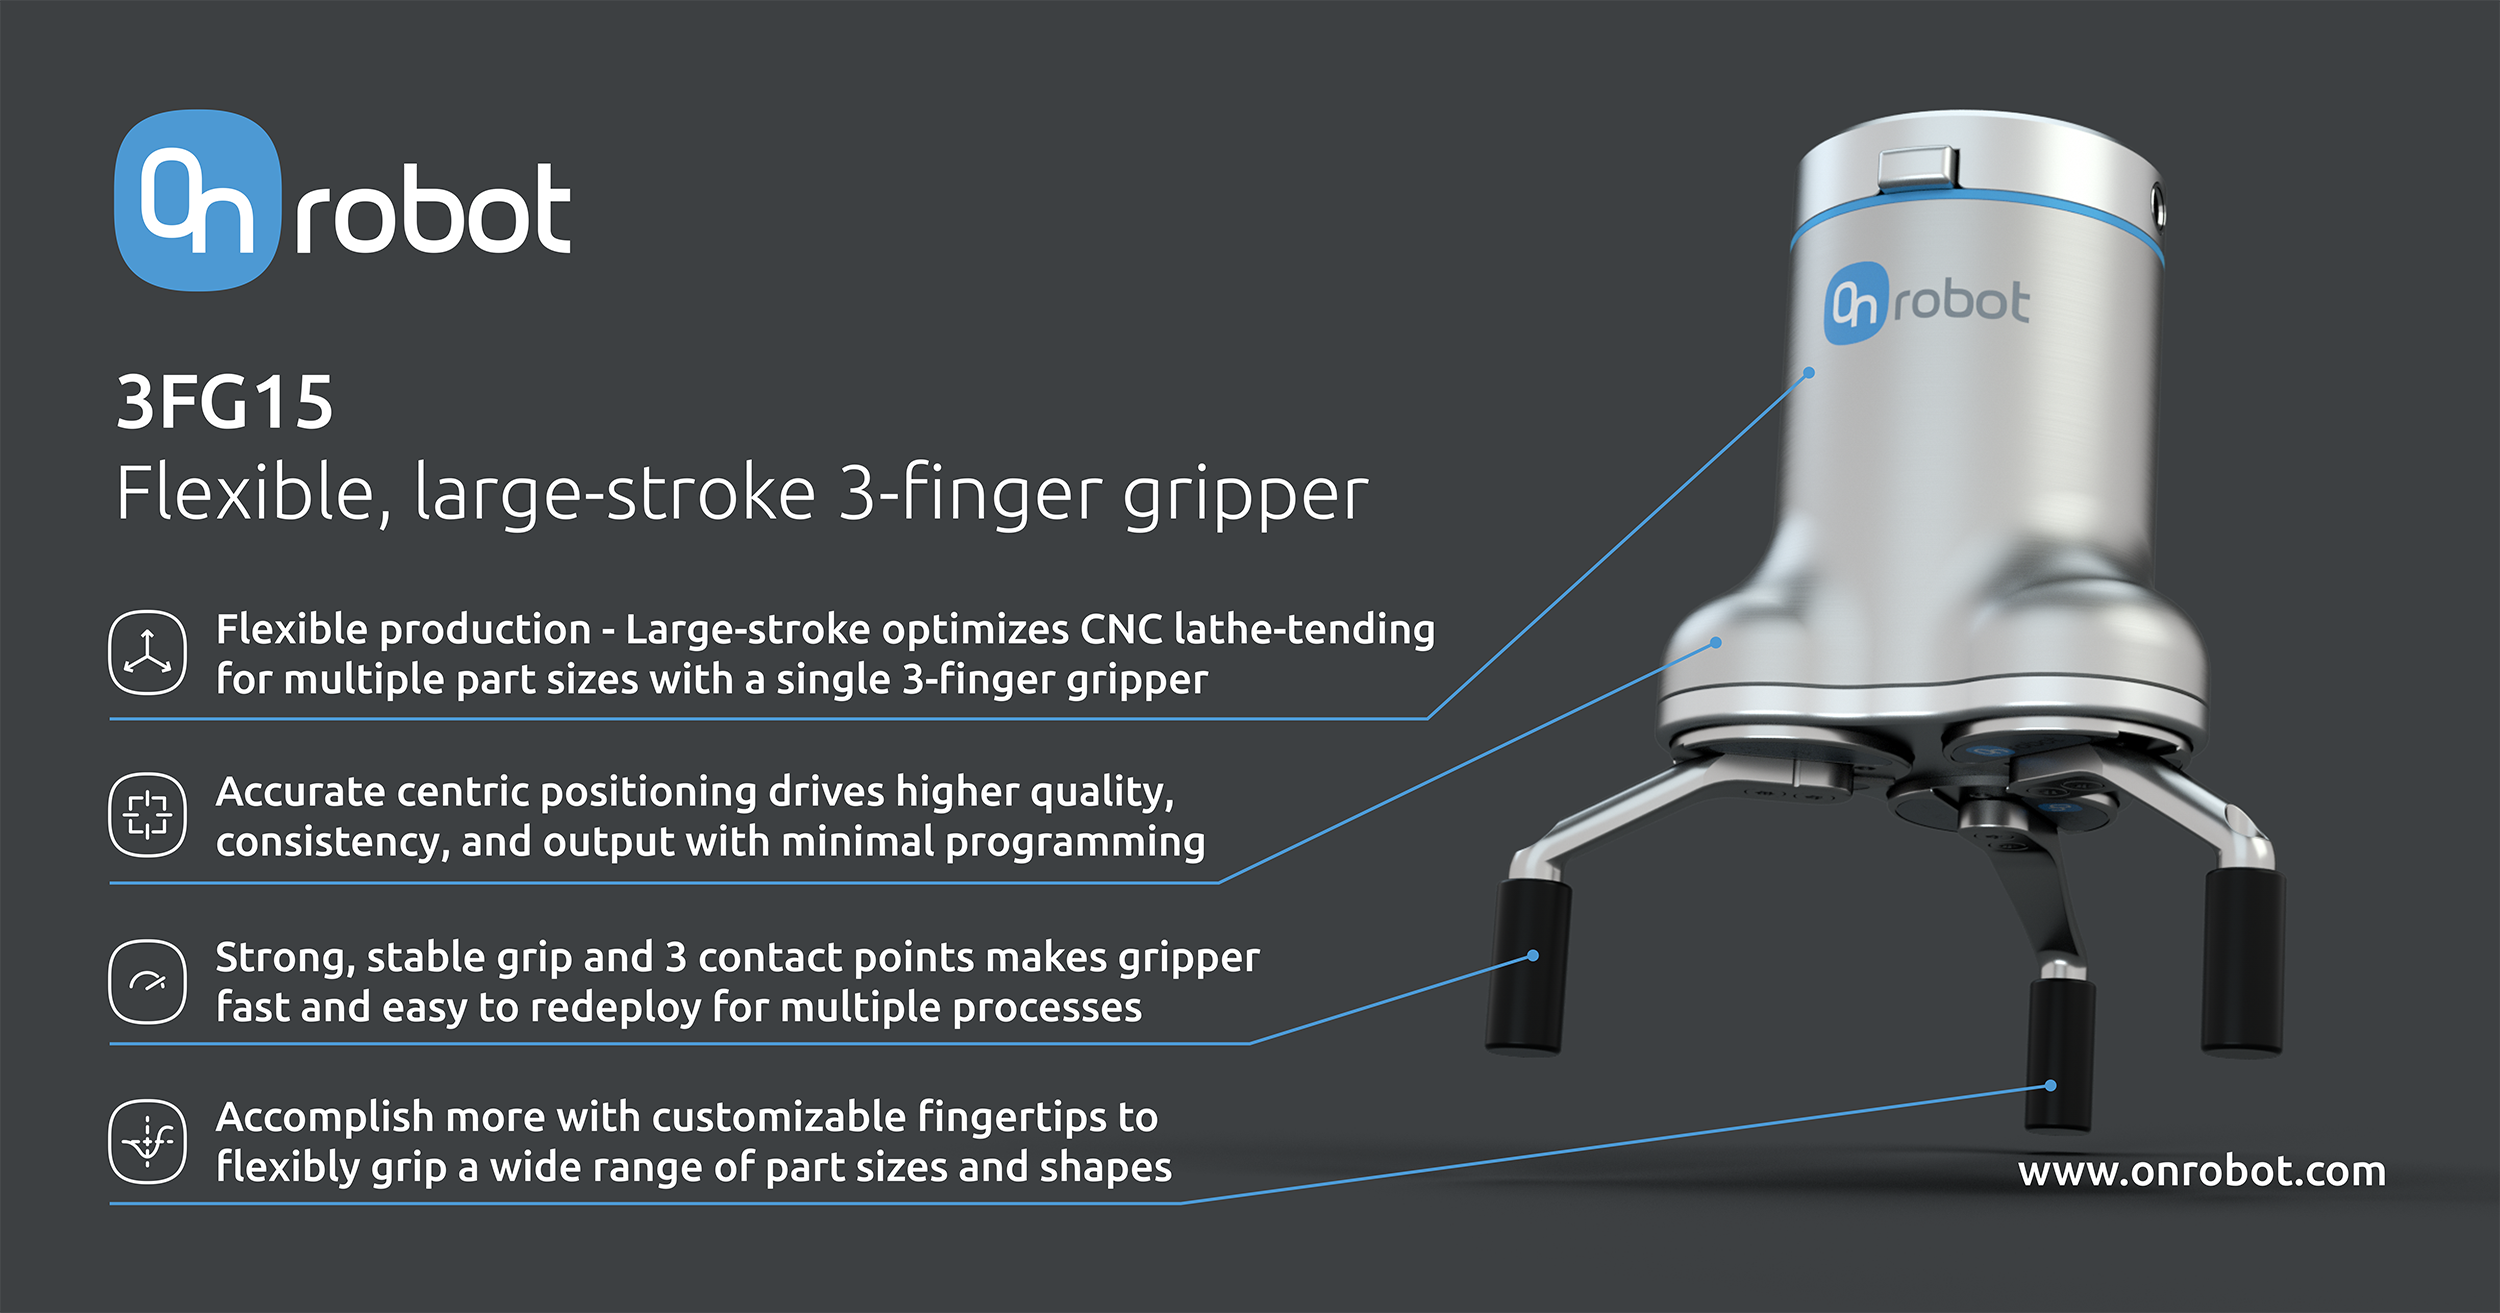 OnRobot 3FG15 three-finger gripper